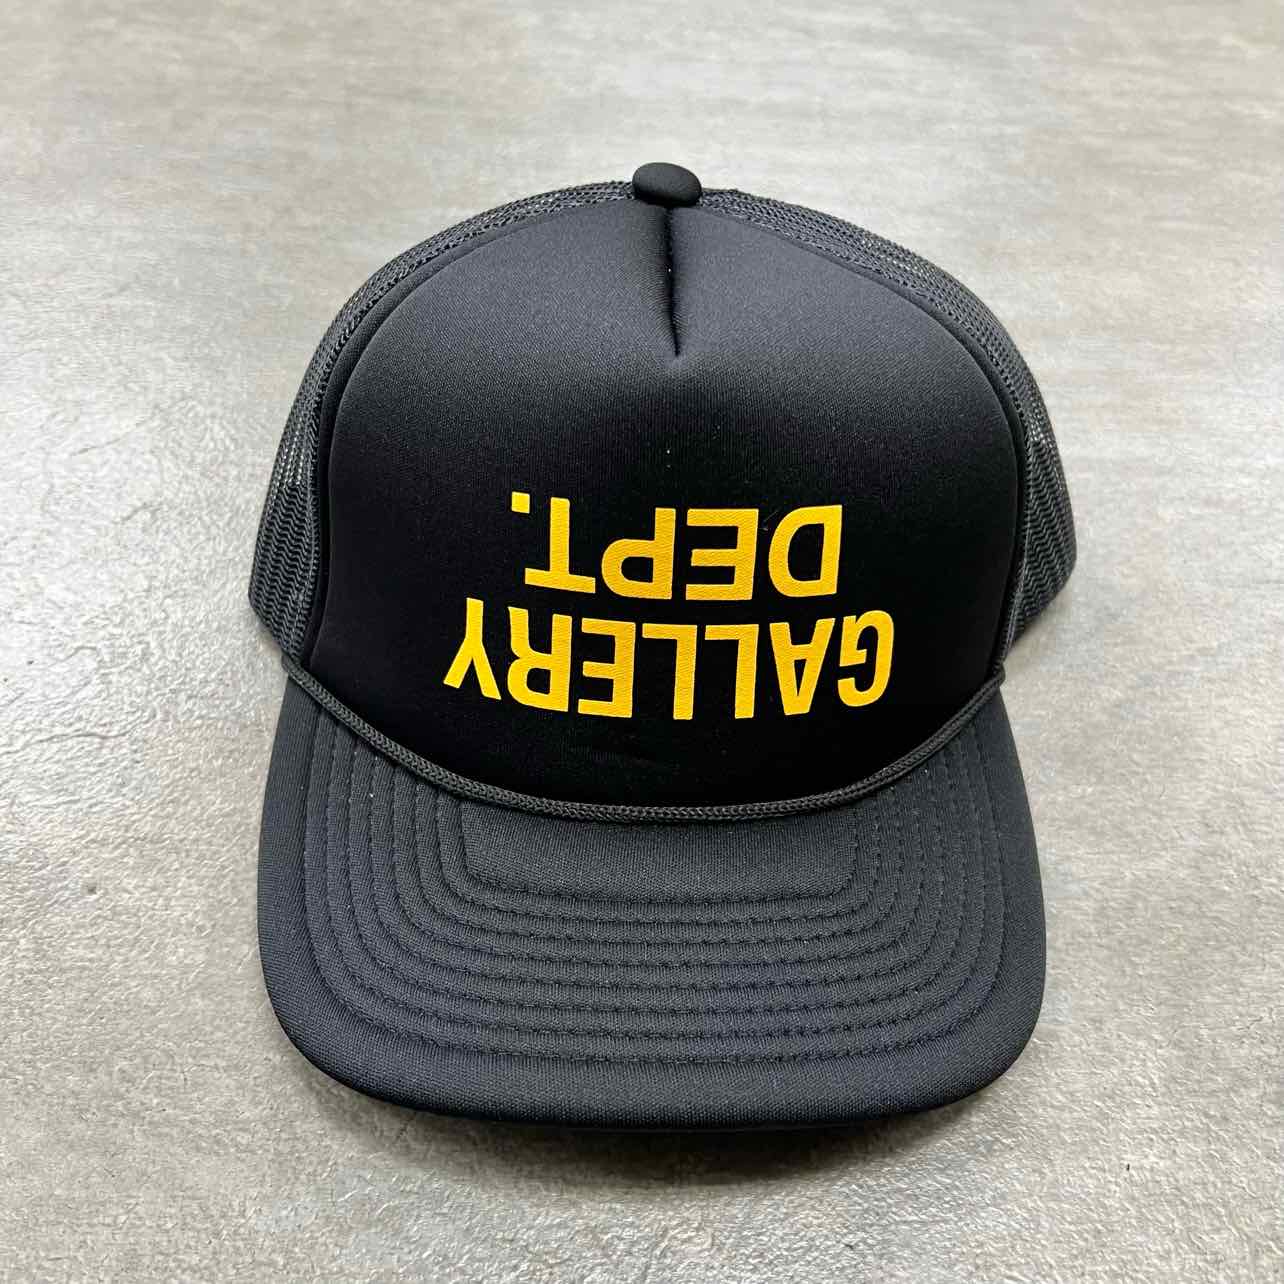 Gallery DEPT. Trucker Hat &quot;UPSIDE DOWN LOGO&quot; New Black